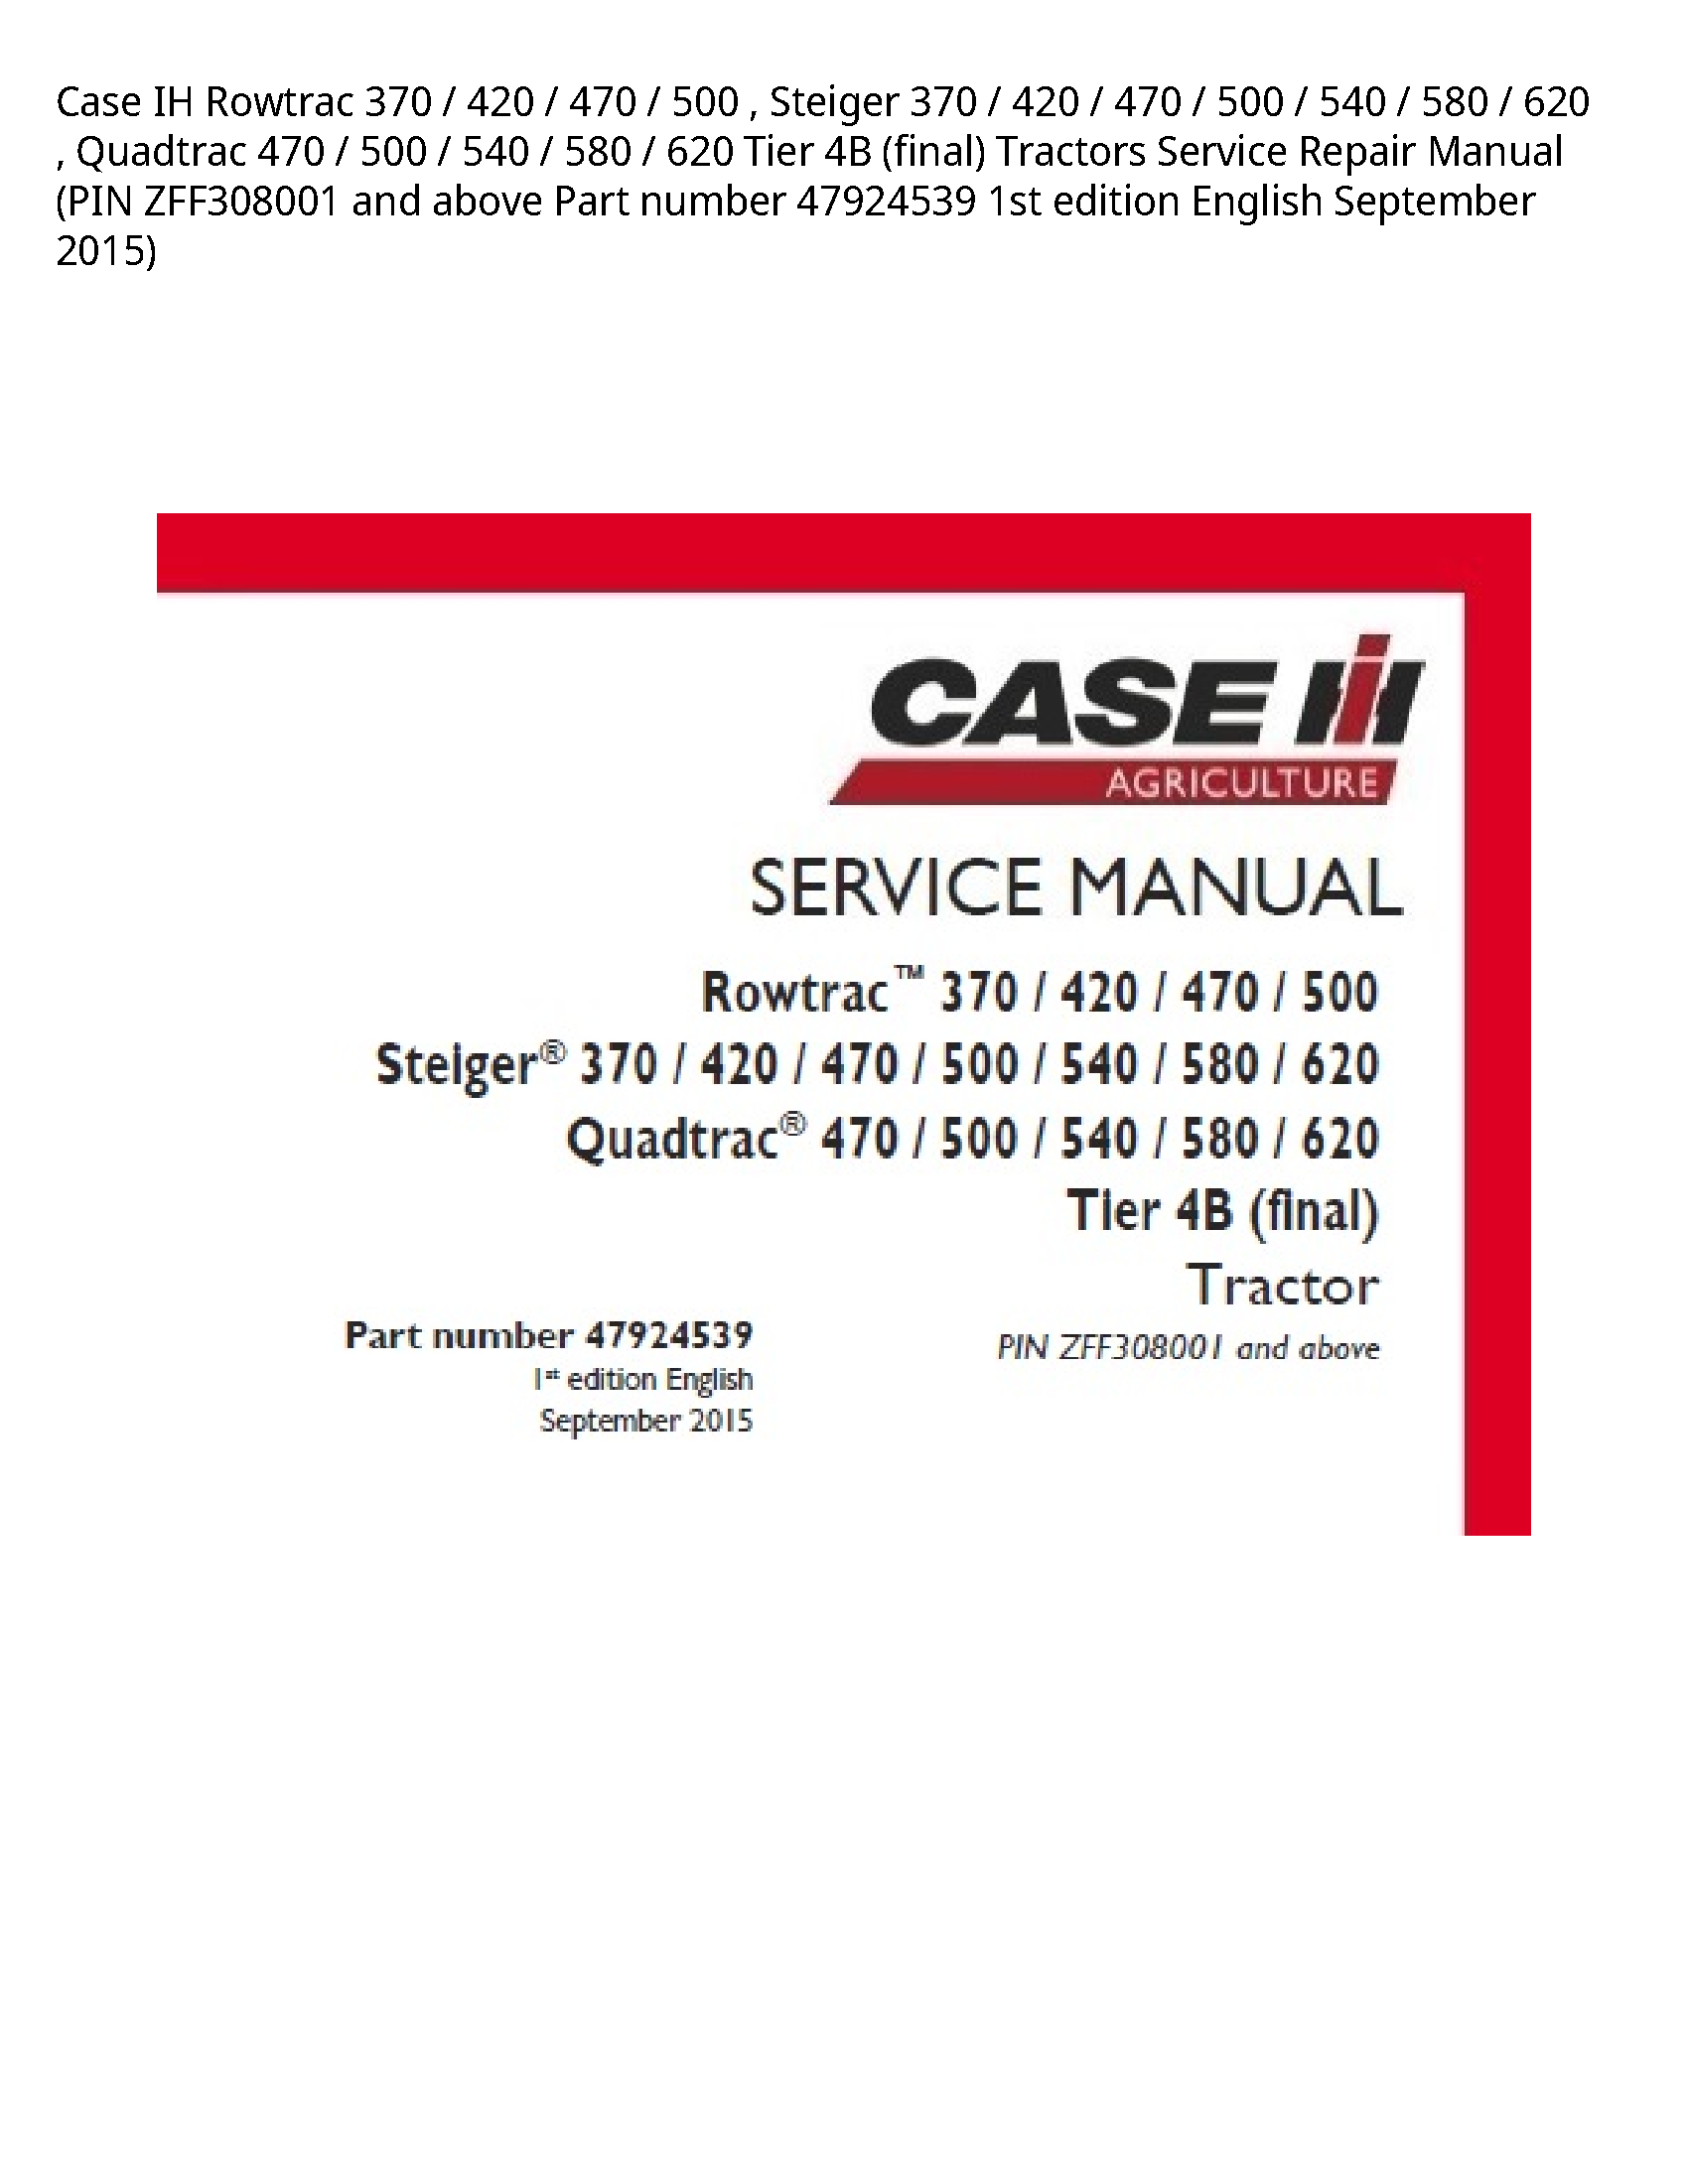 Case/Case IH 370 IH Rowtrac Steiger Quadtrac Tier (final) Tractors manual